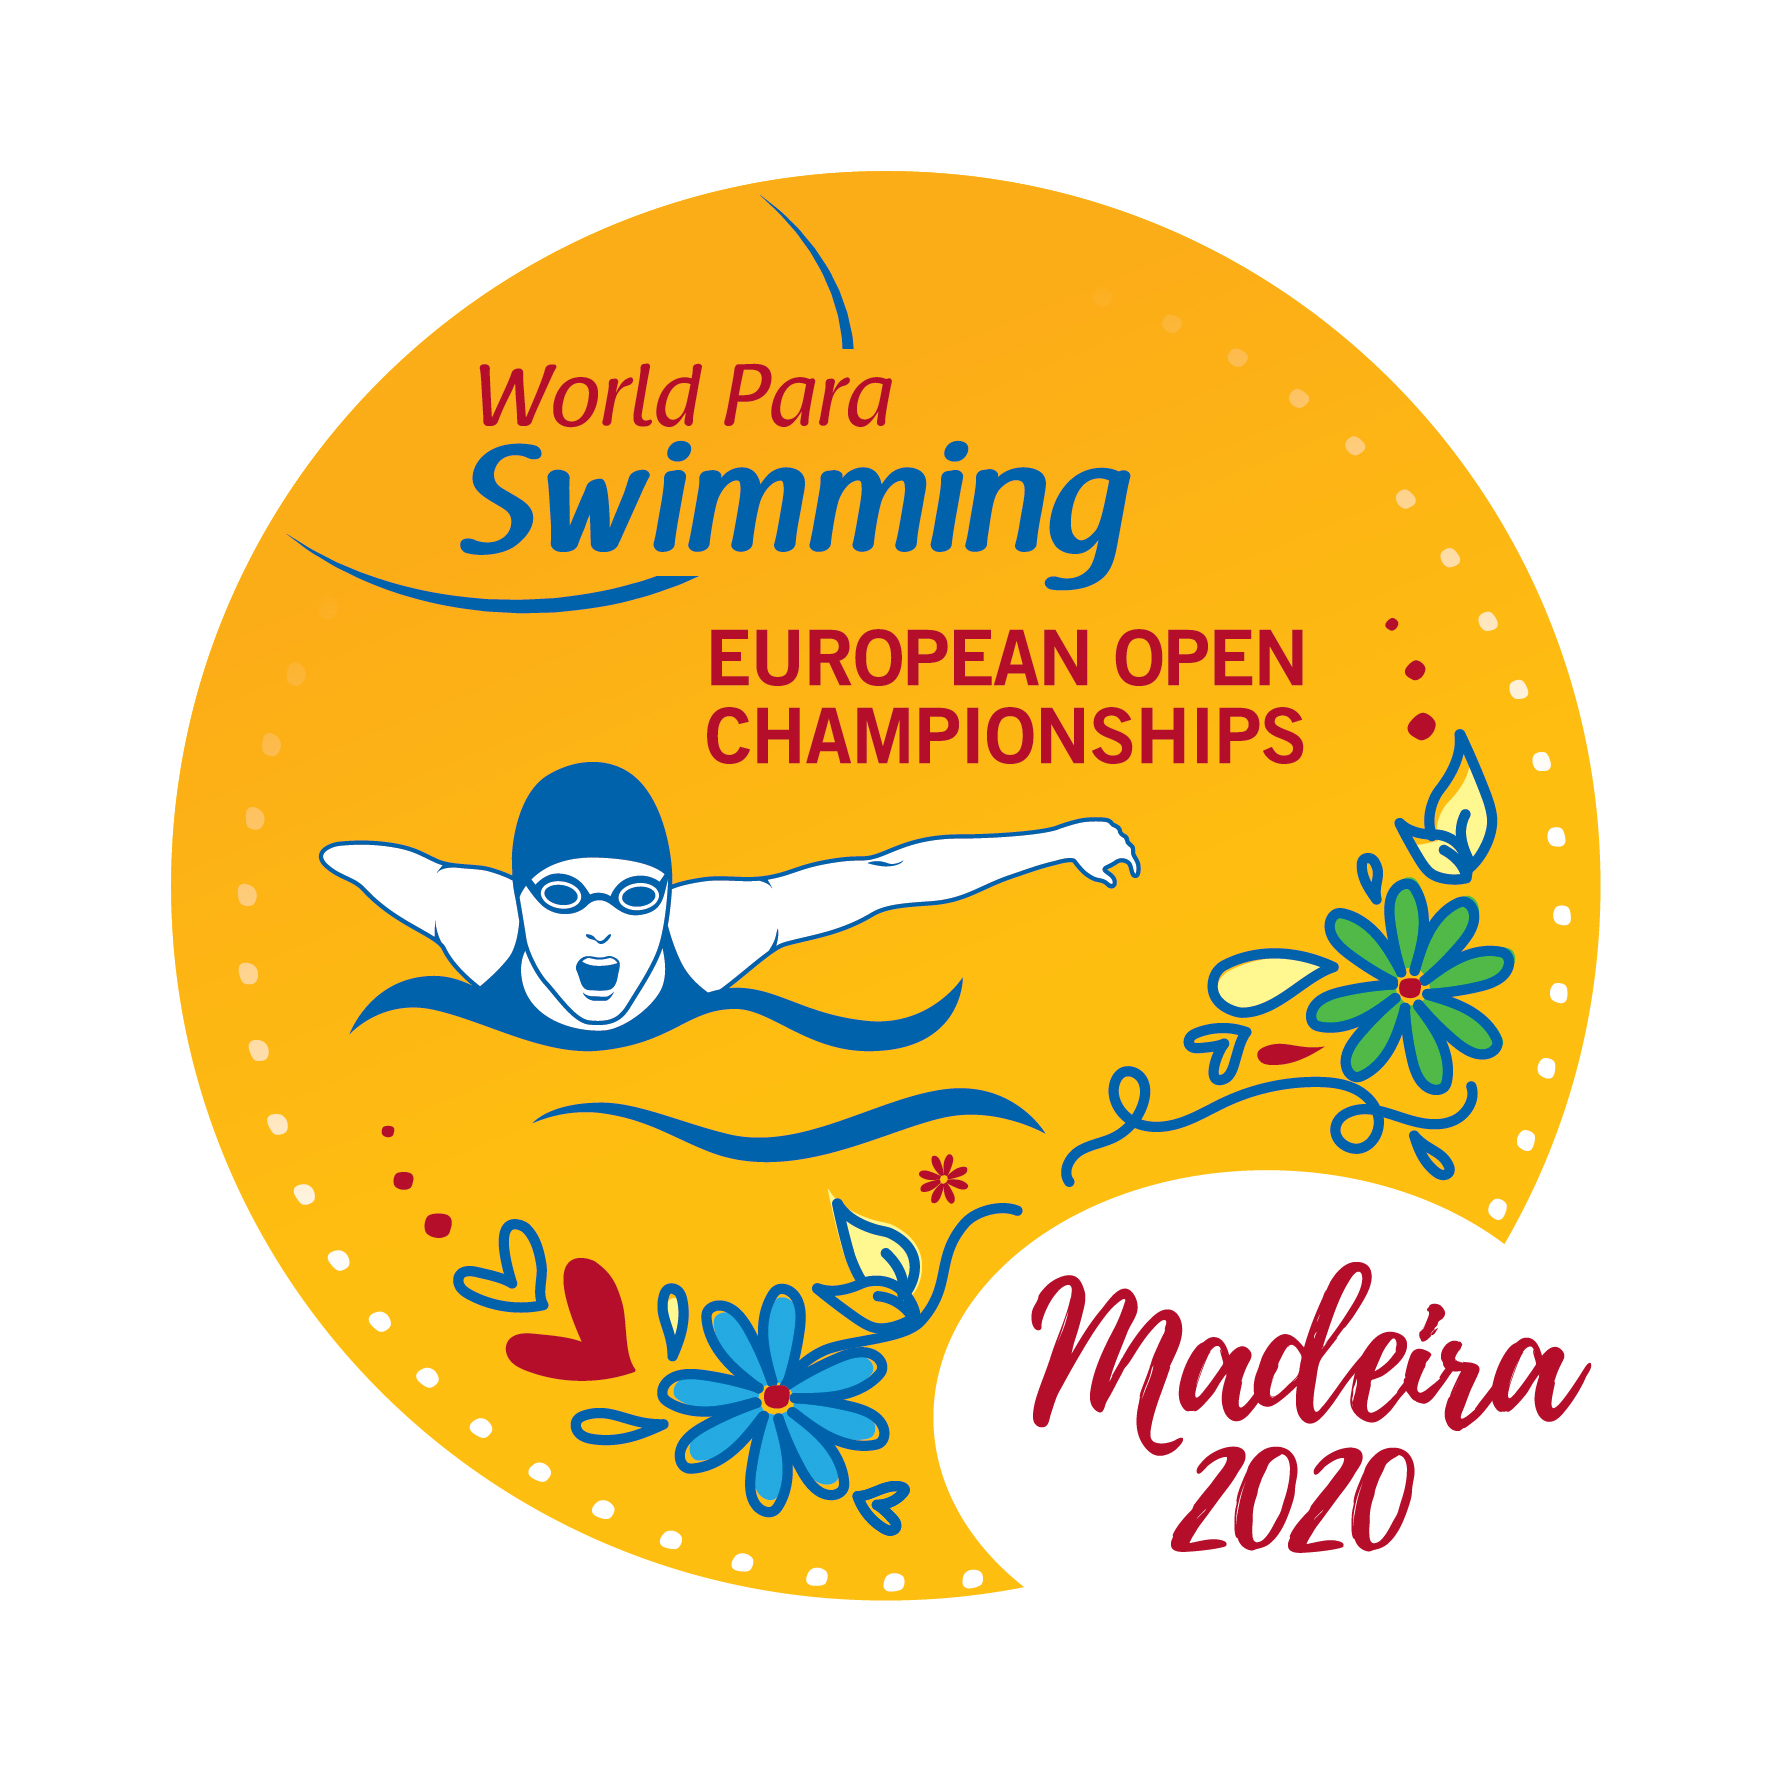 Madeira 2020 logo